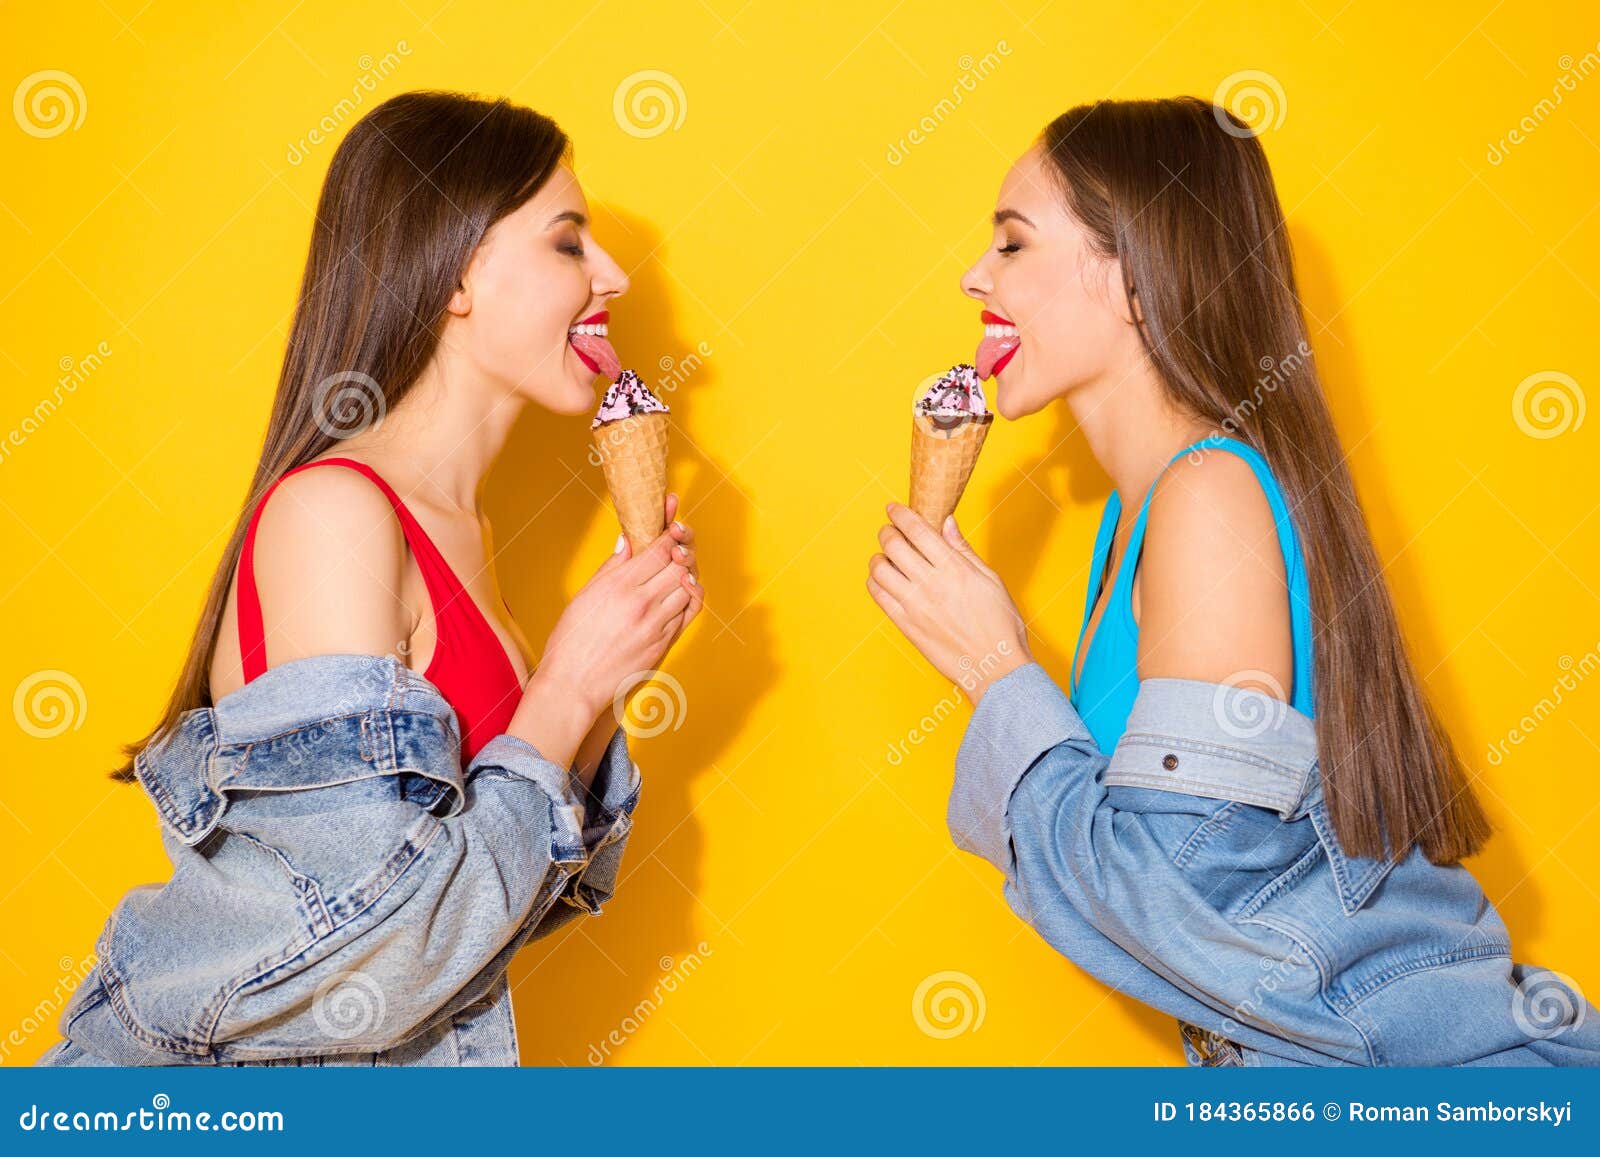 Two girls lick. 2 Девушки, 14 лет лижут друг другу вагину.